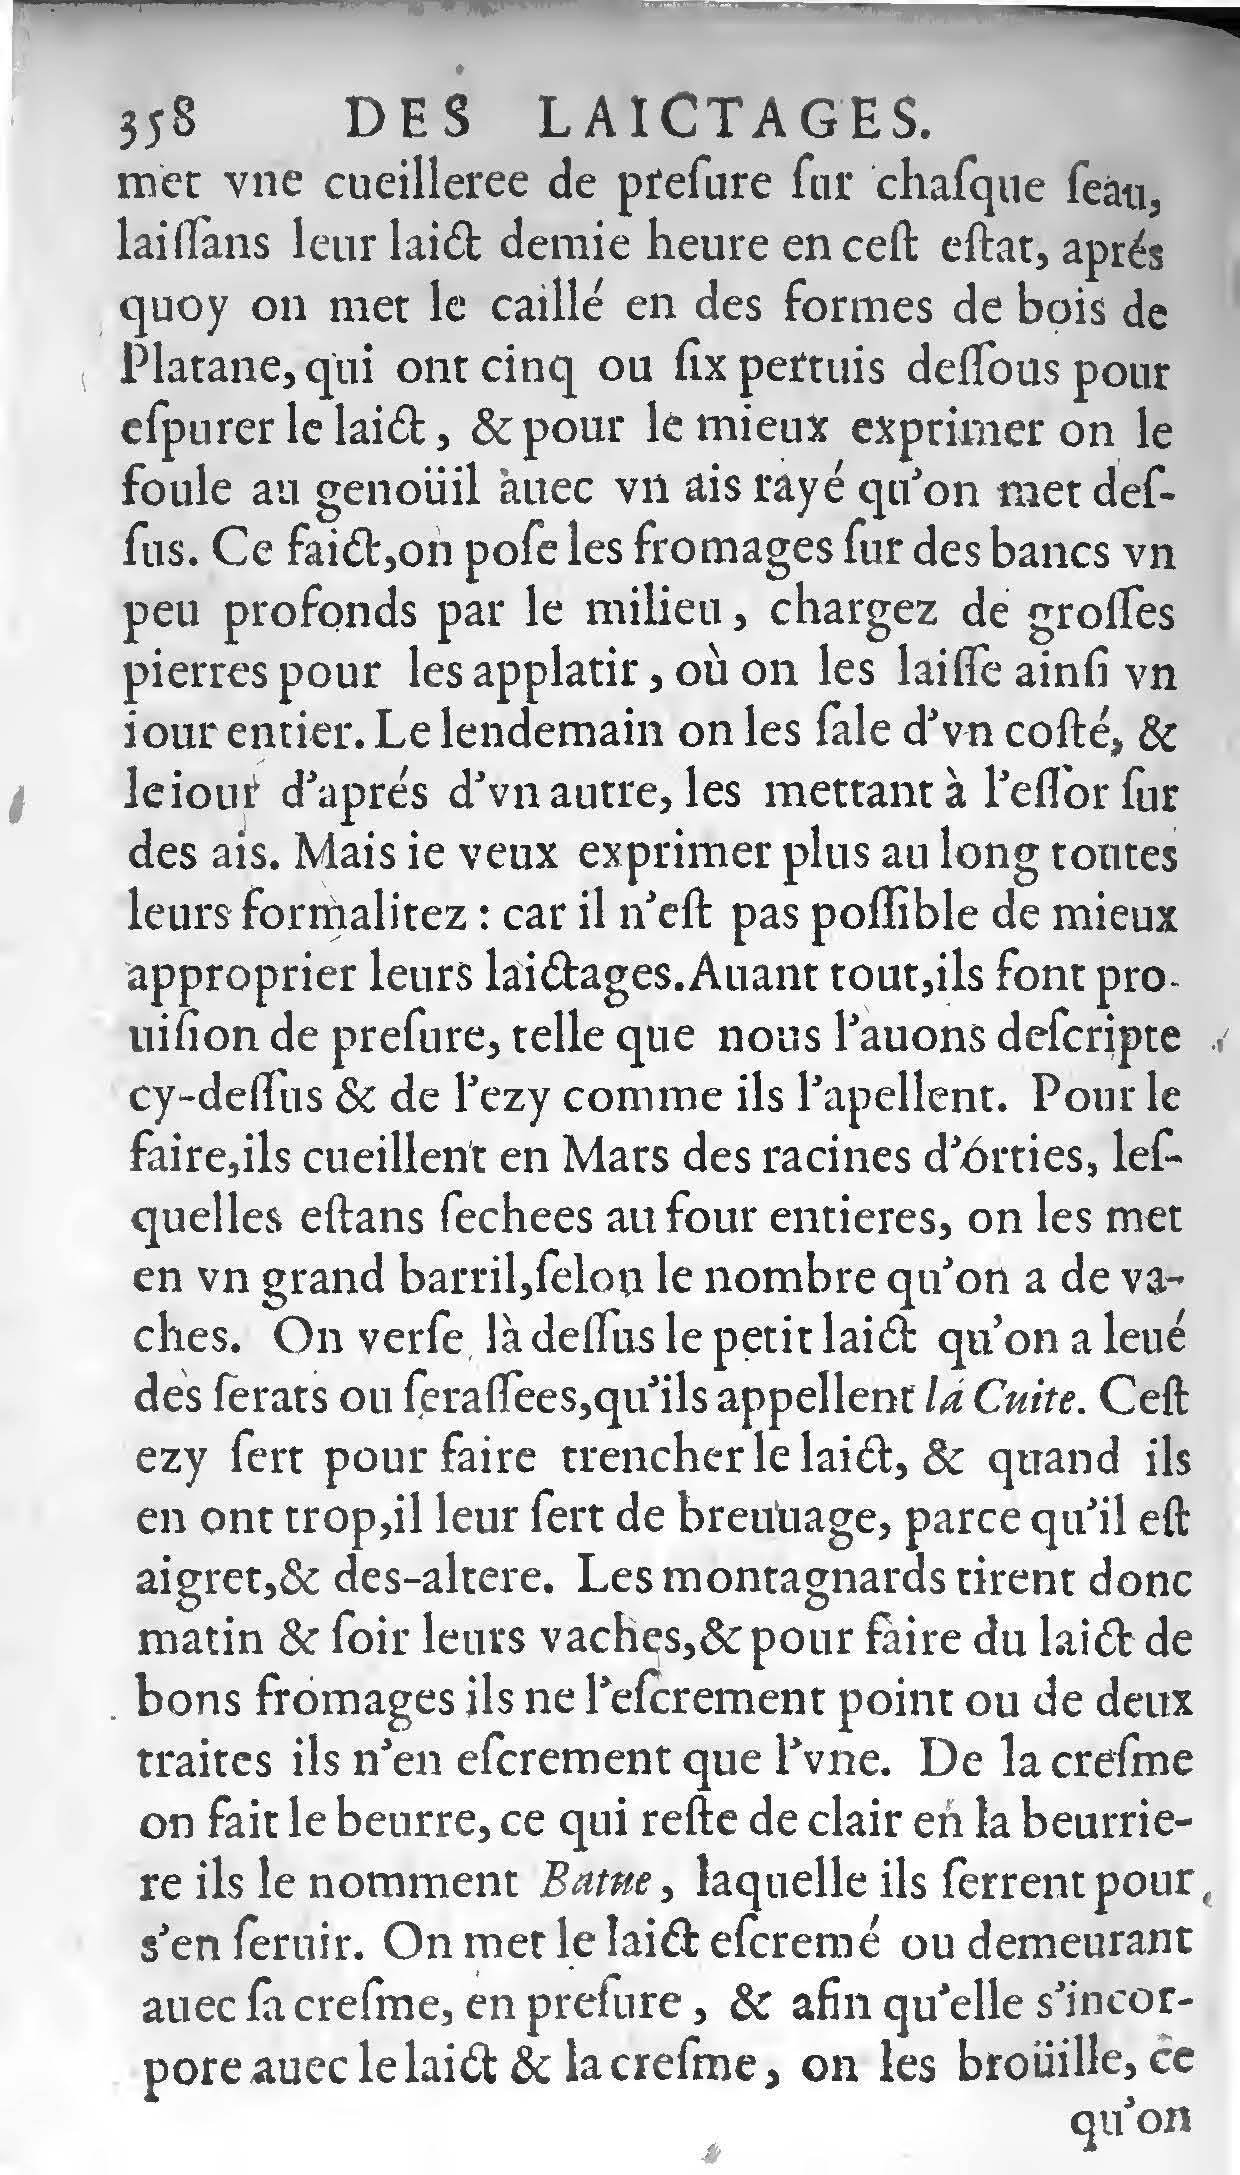 1607 Étienne Servain et Jean Antoine Huguetan - Trésor de santé ou ménage de la vie humaine - BIU Santé_Page_378.jpg